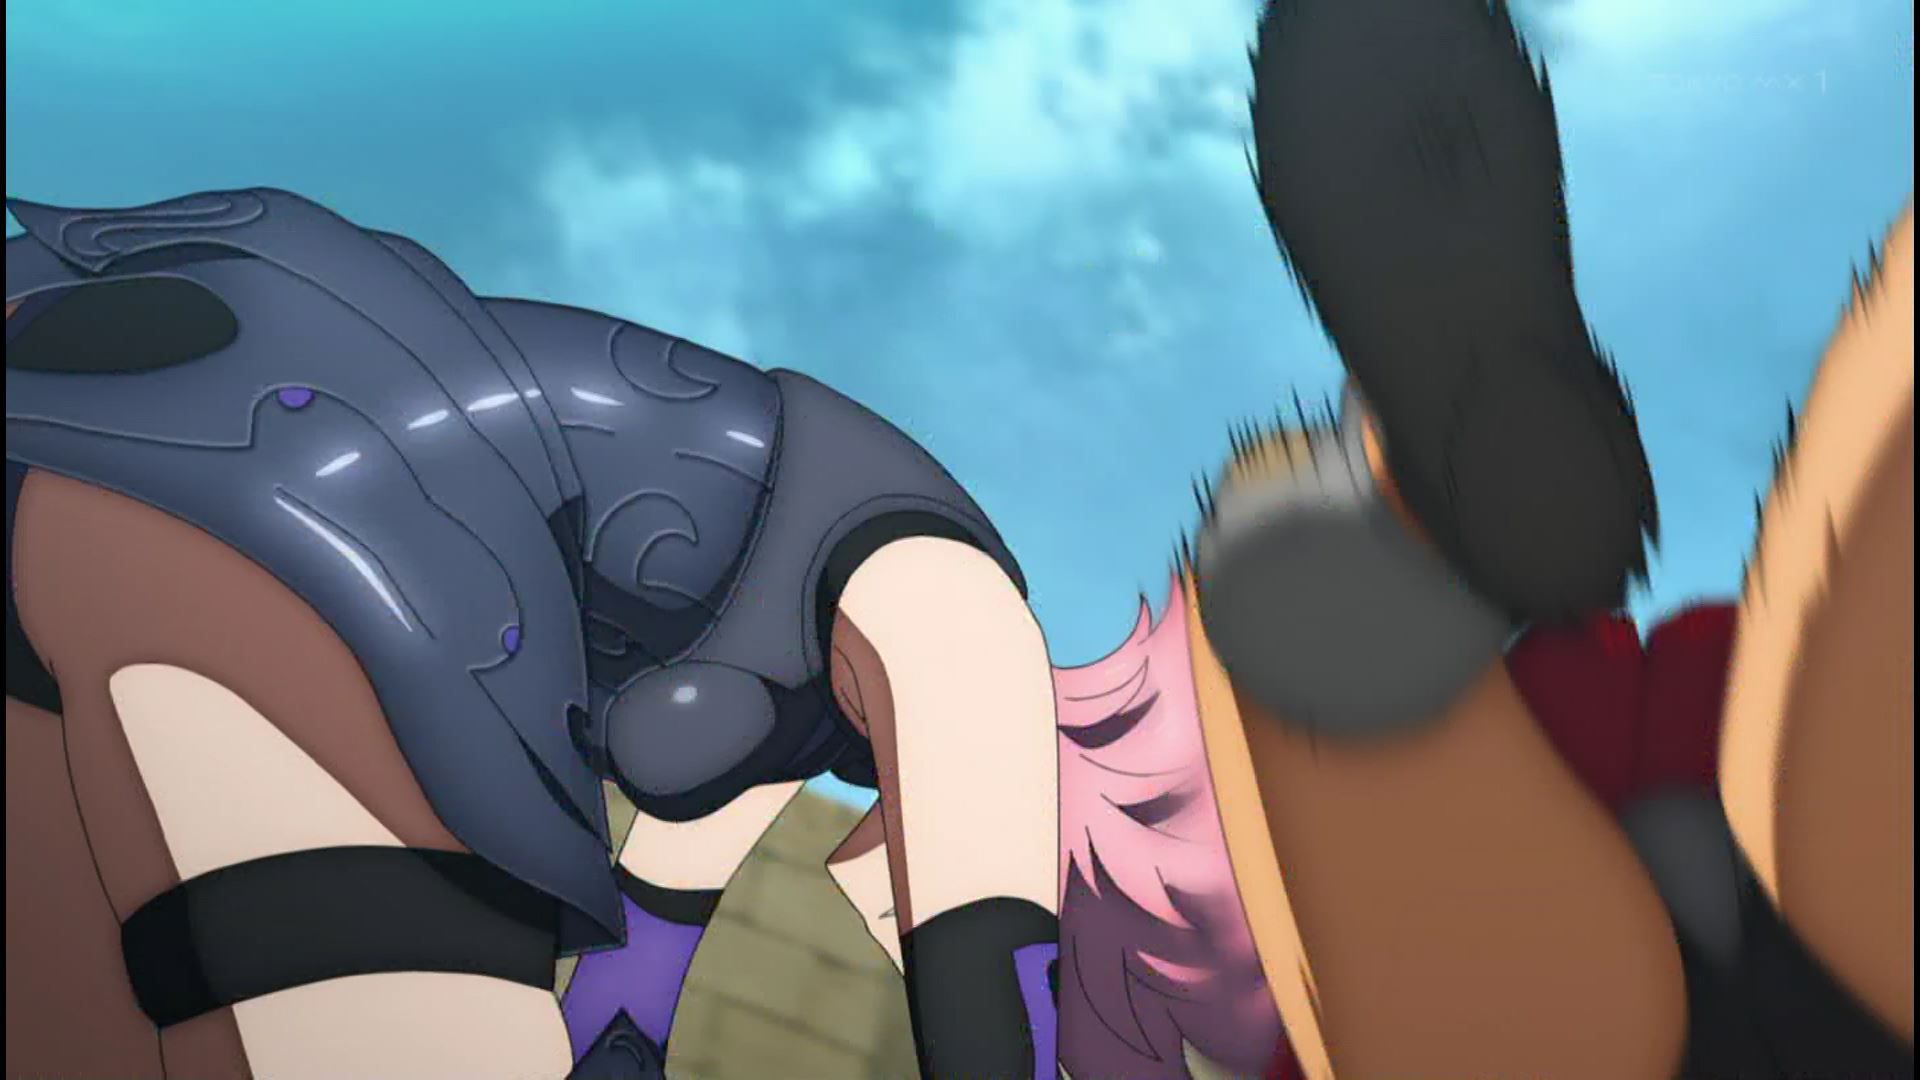 Anime [Fate / Grand Order Babylonia] 3 episodes mash erotic and ushiwakamaru tits! 18